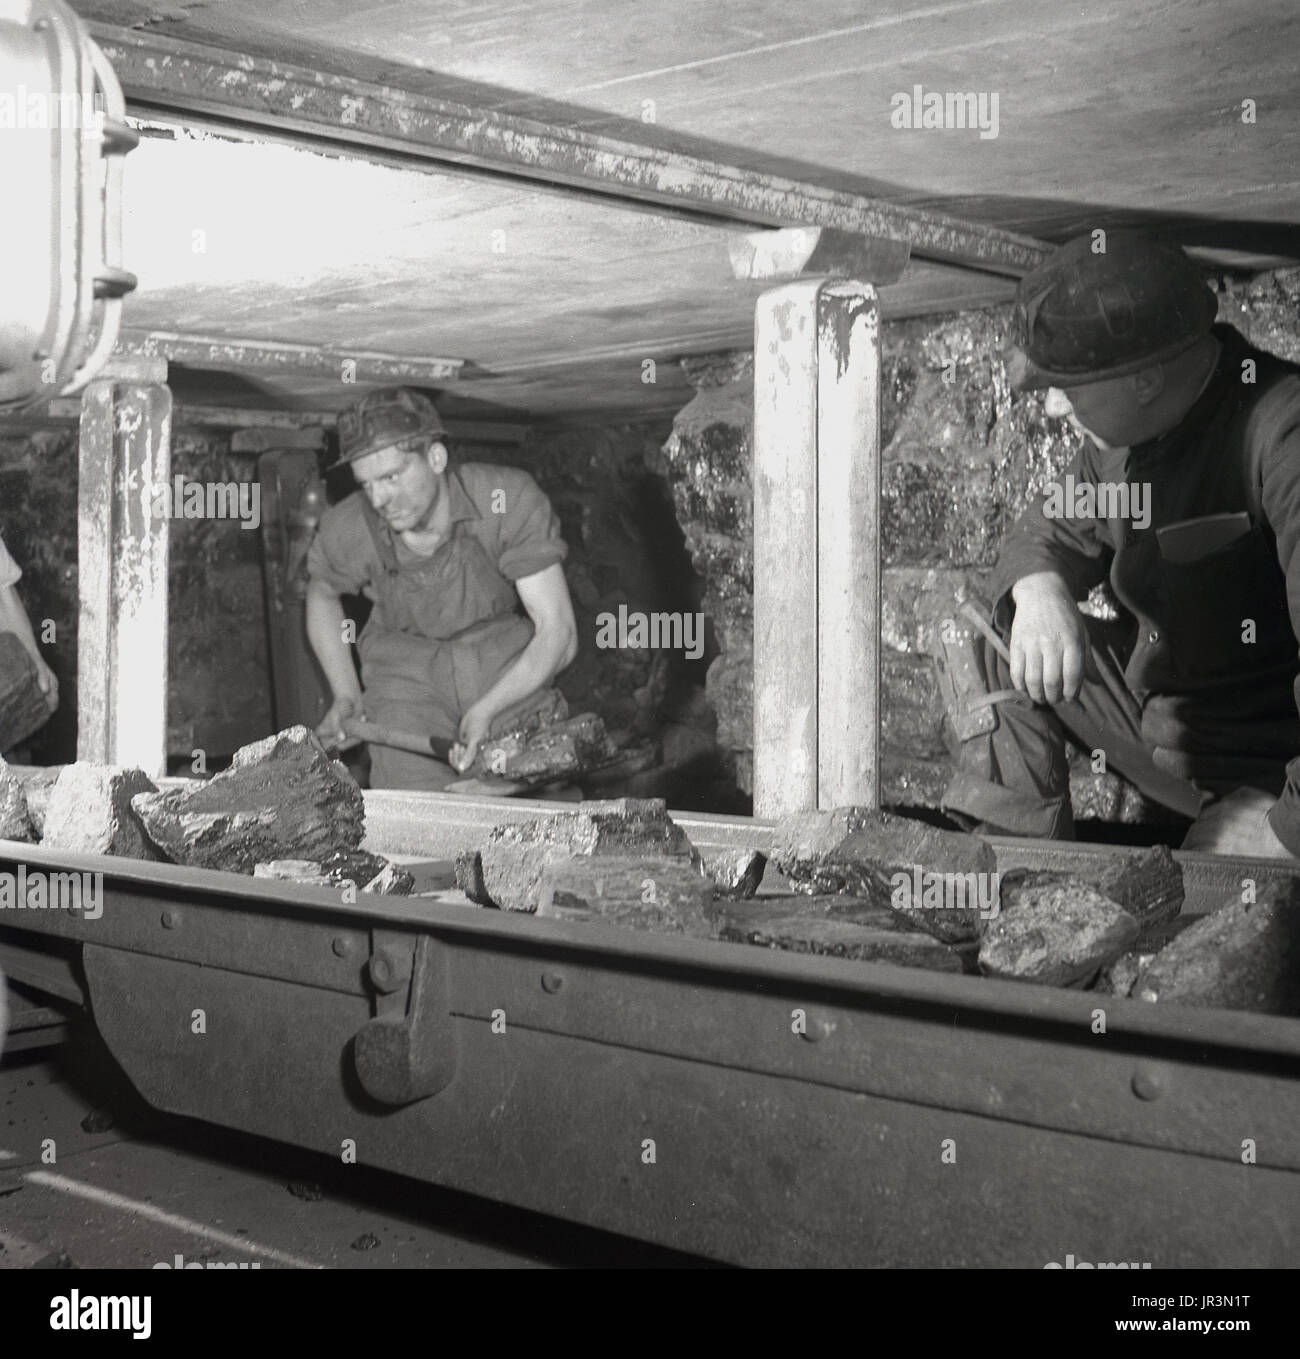 1948, storico Inghilterra, un minatore utilizzando una vanga per caricare grandi pezzi di carbone e di altre sostanze minerali in un trasportatore di metallo sotto l'occhio vigile di un esperto supervisore di data mining. Foto Stock